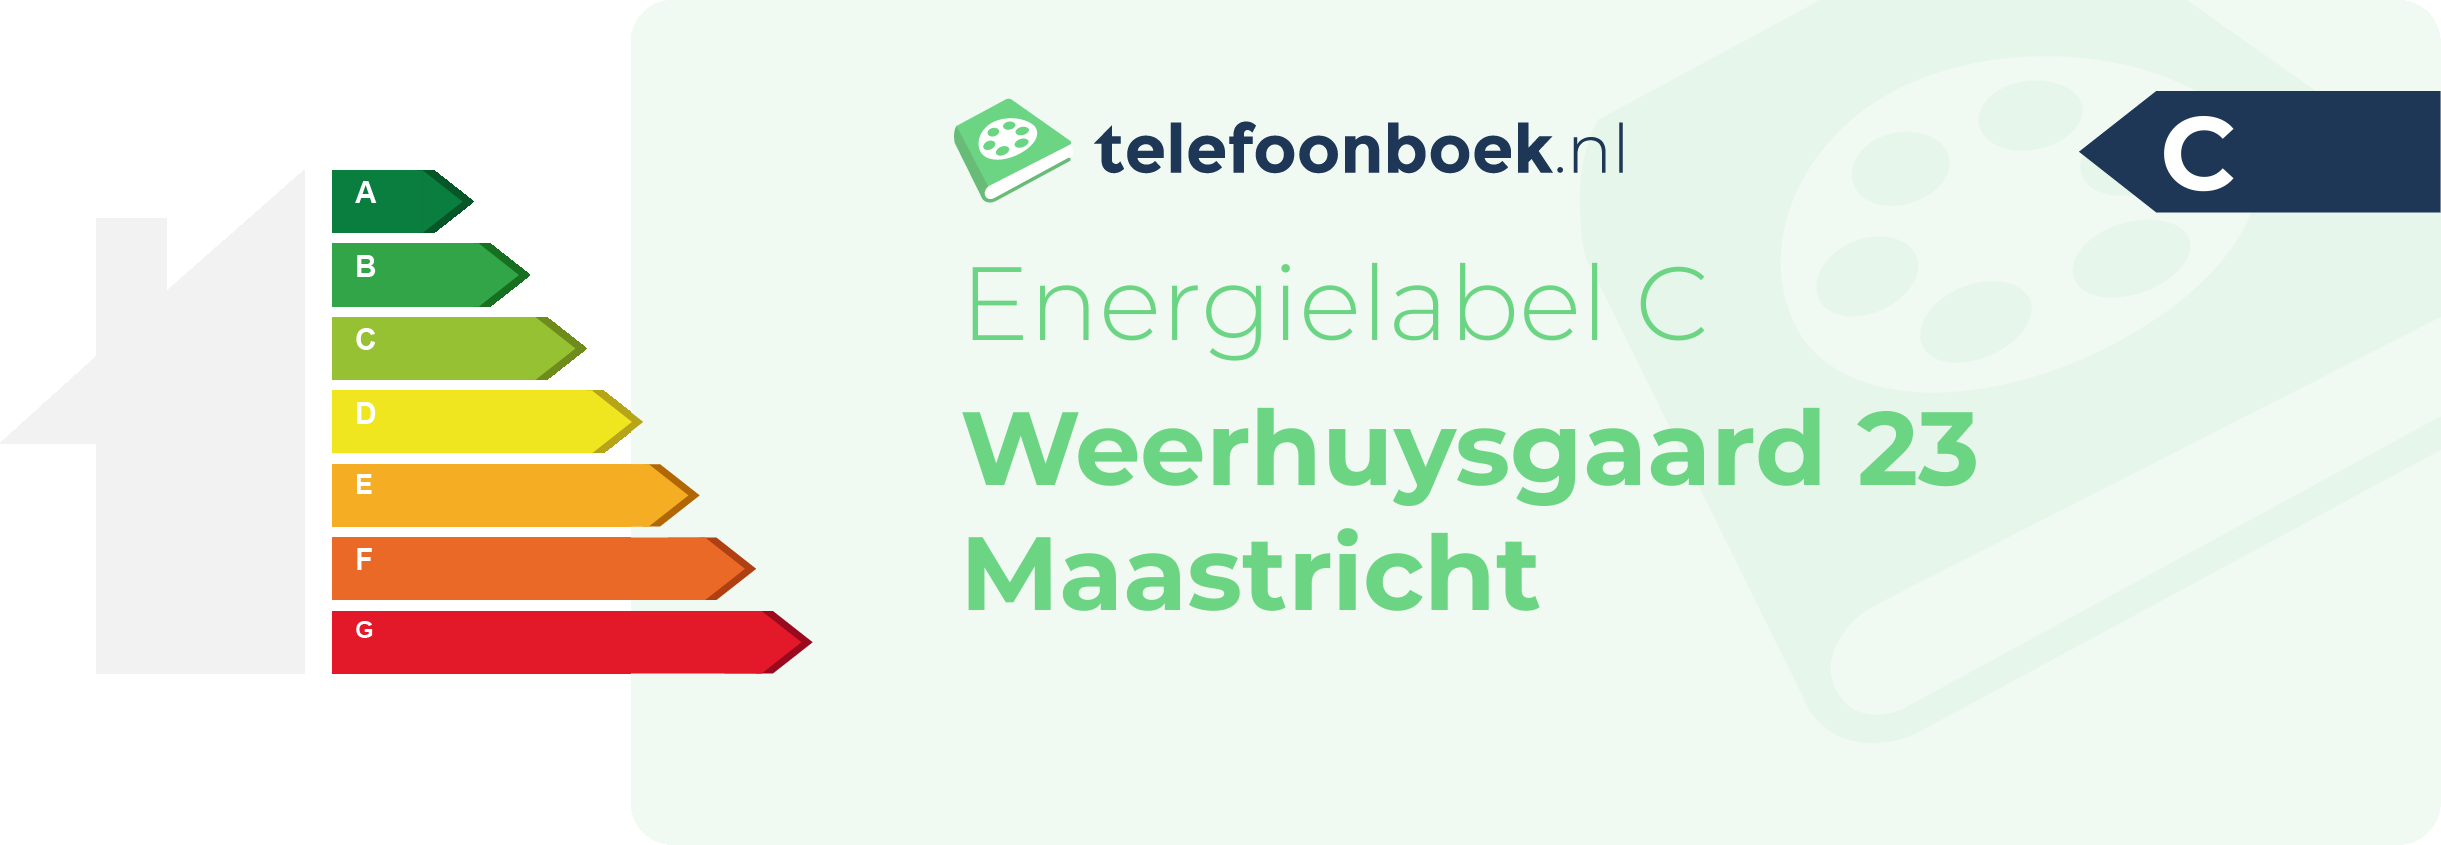 Energielabel Weerhuysgaard 23 Maastricht